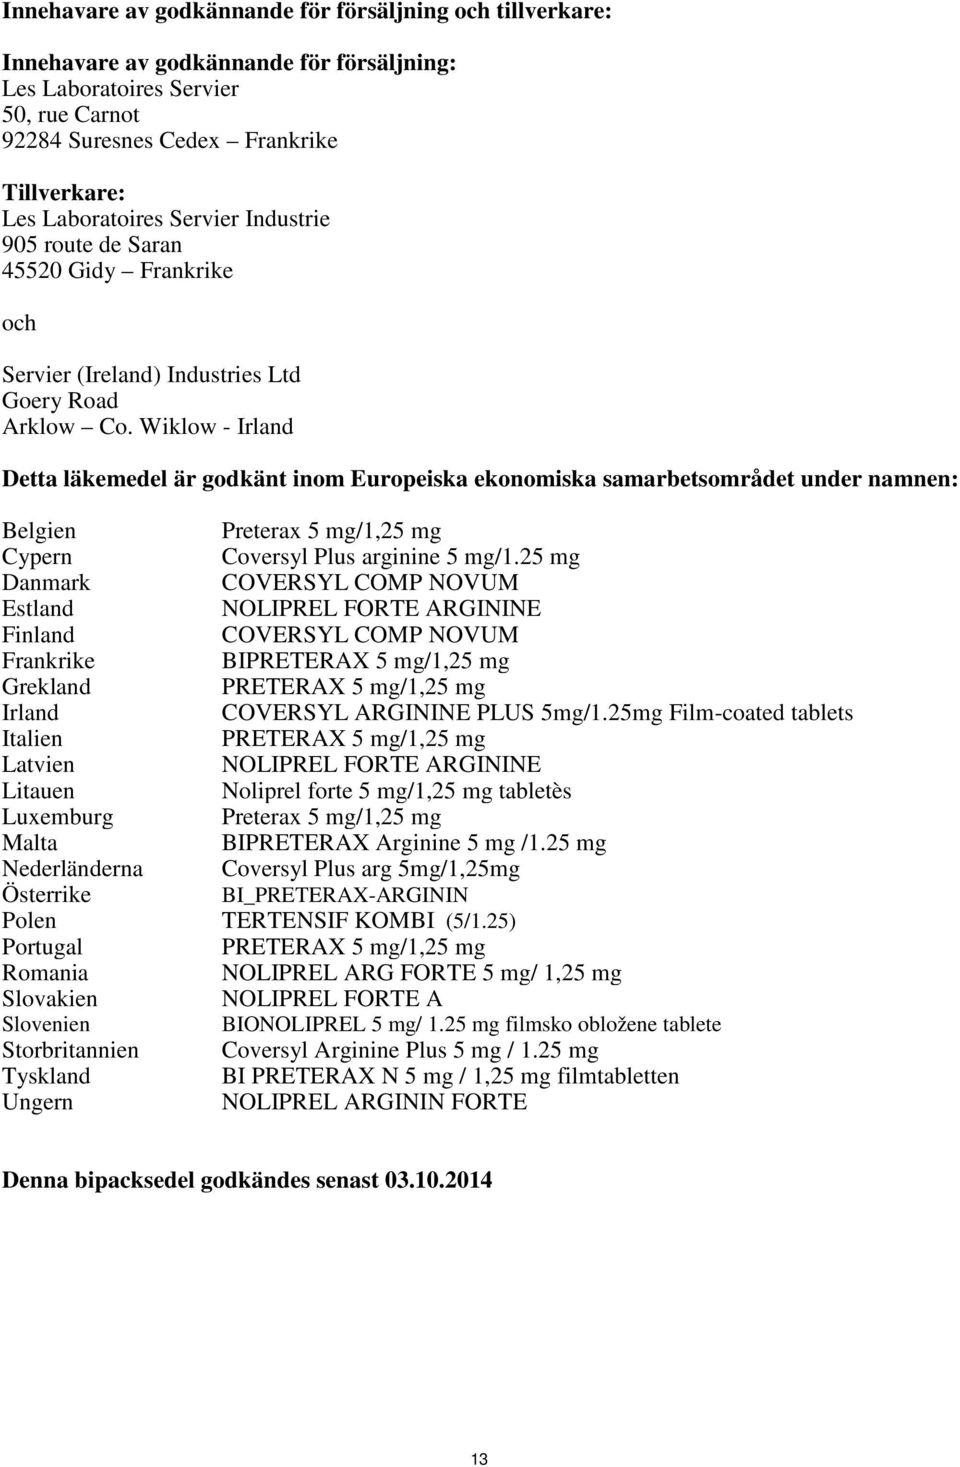 Wiklow - Irland Detta läkemedel är godkänt inom Europeiska ekonomiska samarbetsområdet under namnen: Belgien Preterax 5 mg/1,25 mg Cypern Coversyl Plus arginine 5 mg/1.